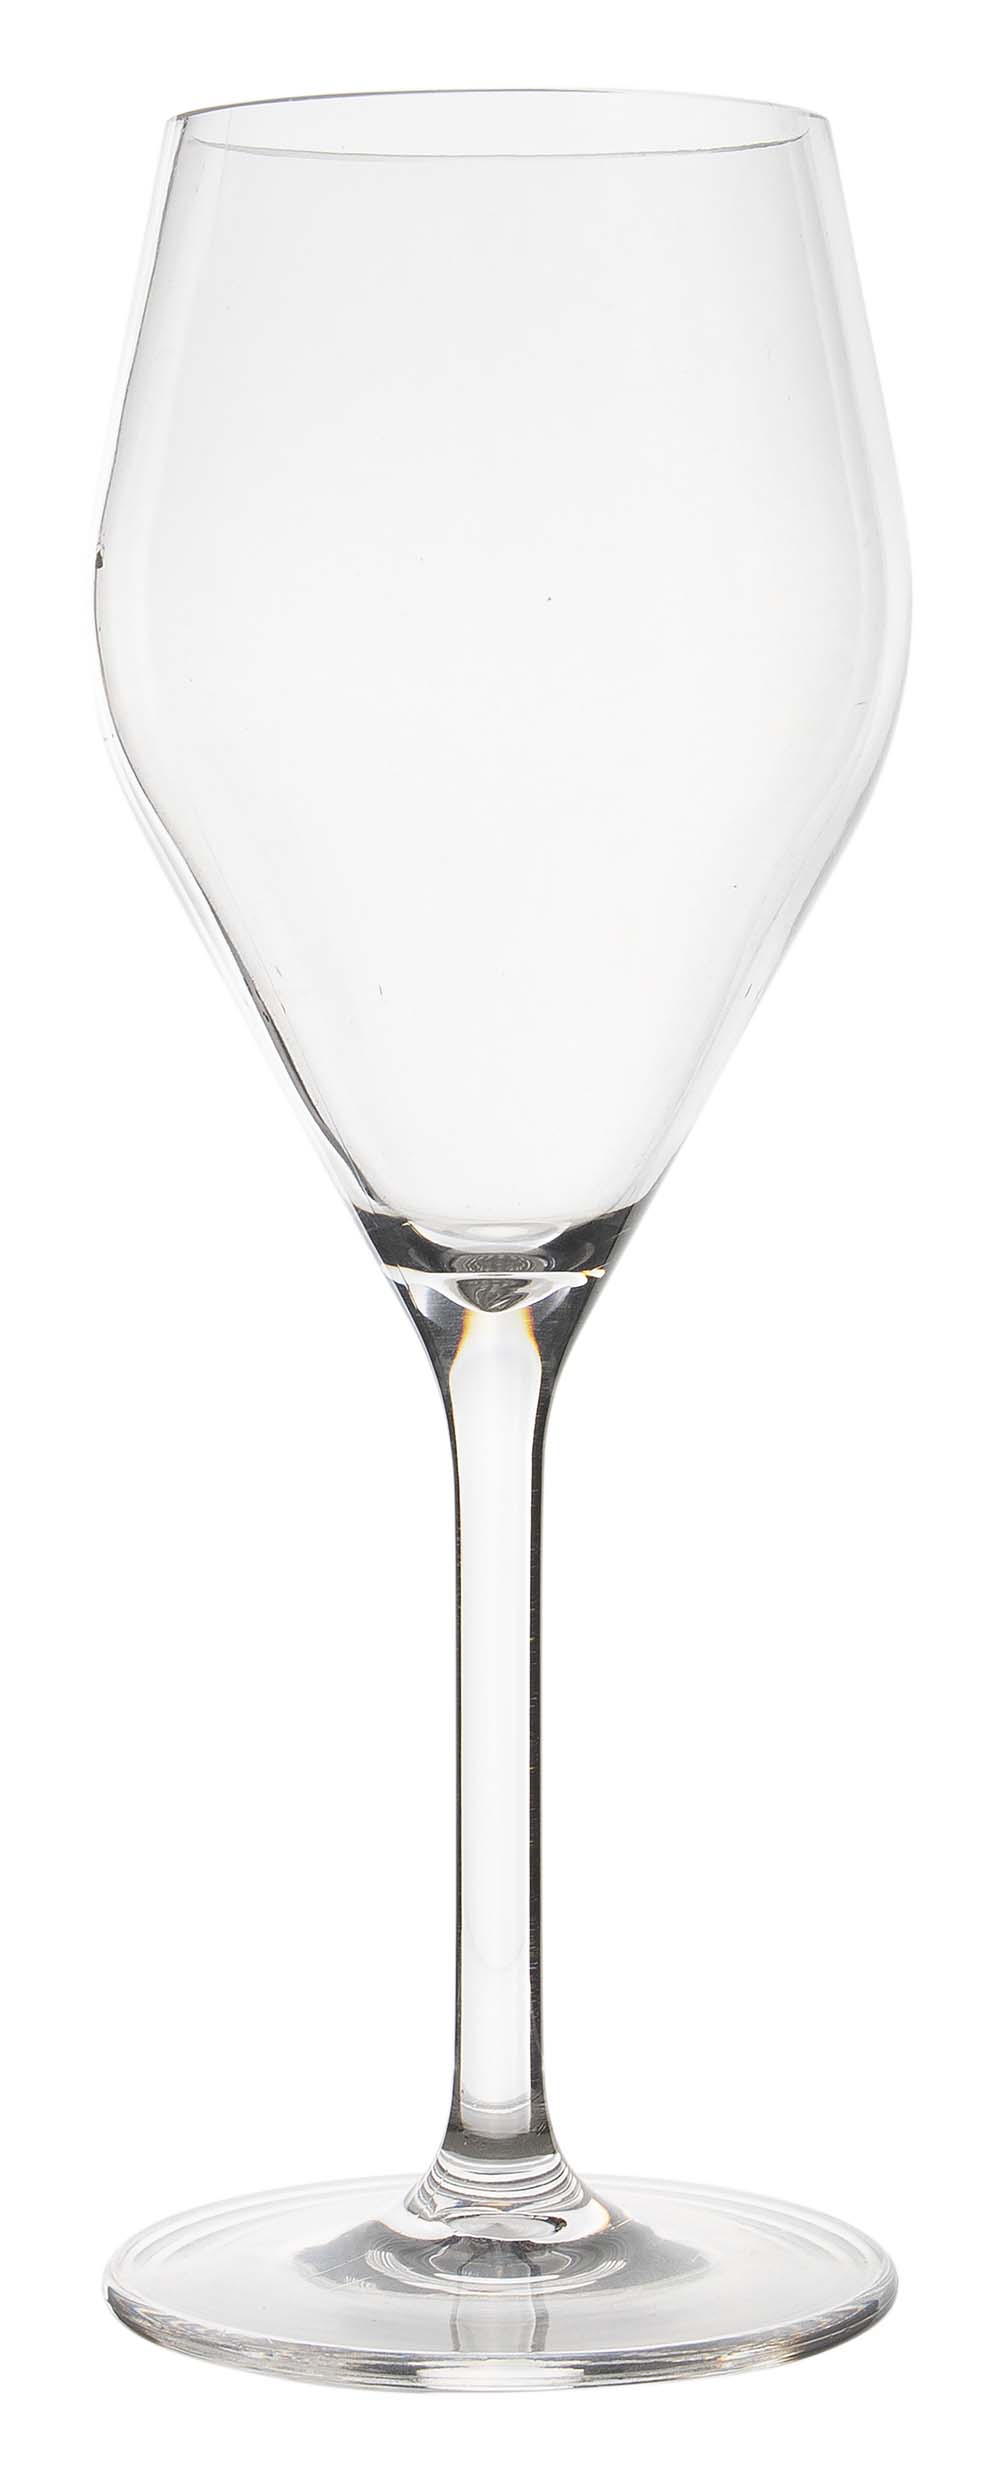 6968929 Een witte wijnglas uit de Royal line collectie. Vrijwel onbreekbaar door hoogwaardig MS materiaal. Bestaat uit een set van 2 stuks. Zeer gemakkelijk te reinigen en langdurig te gebruiken, wat het glas erg duurzaam maakt. Daarnaast is het witte wijnglas lichtgewicht en krasbestendig. Inhoud: 250 ml.